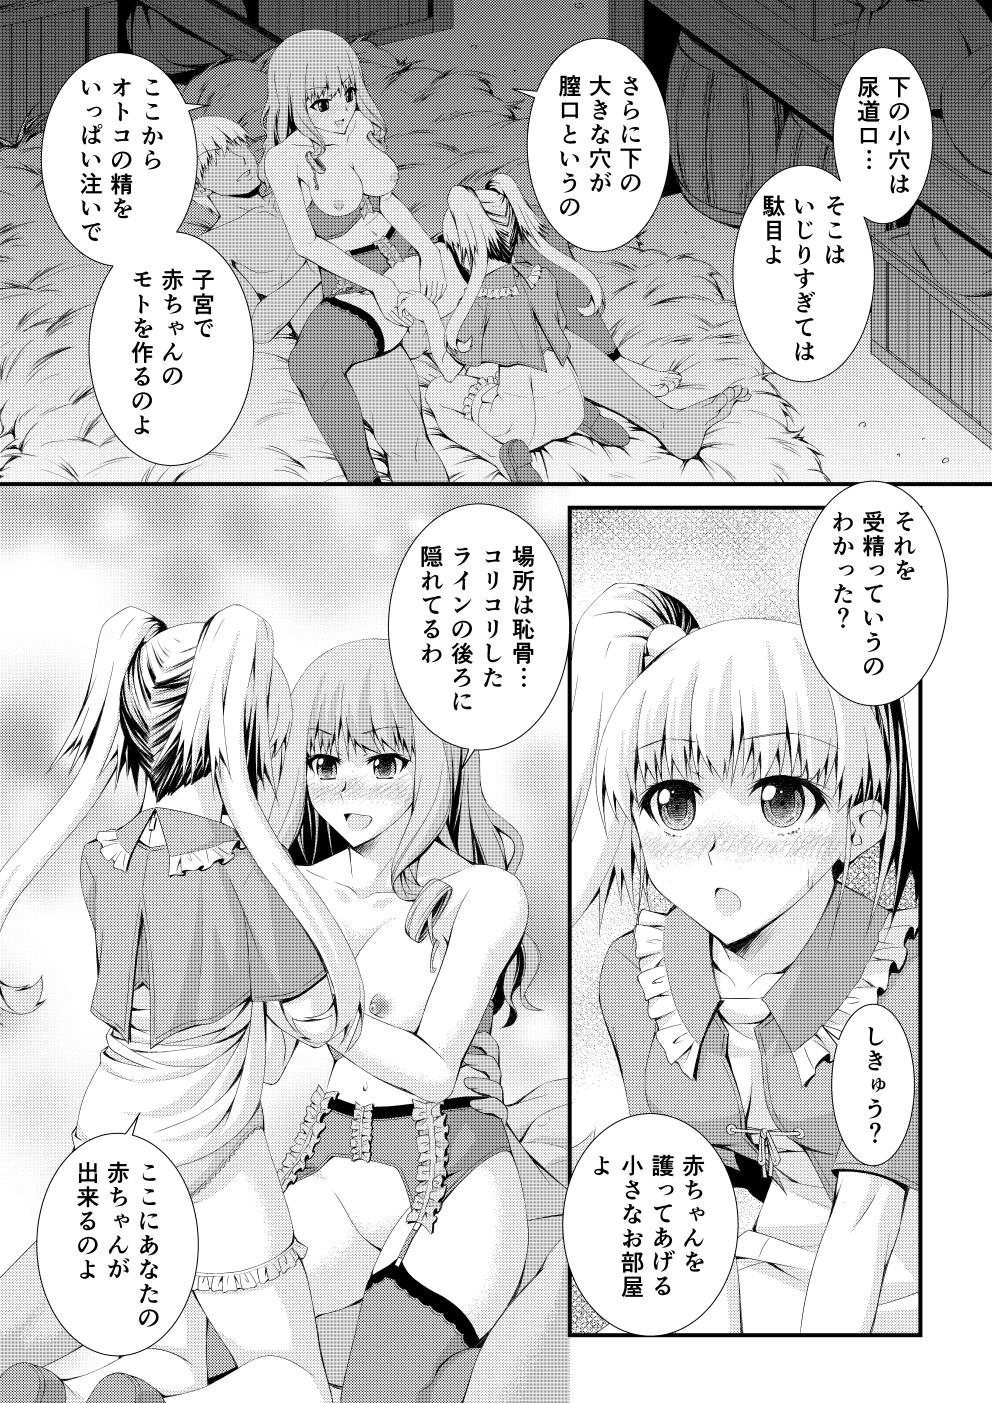 Shinsaku Doujin Muryou Manga 32P 11